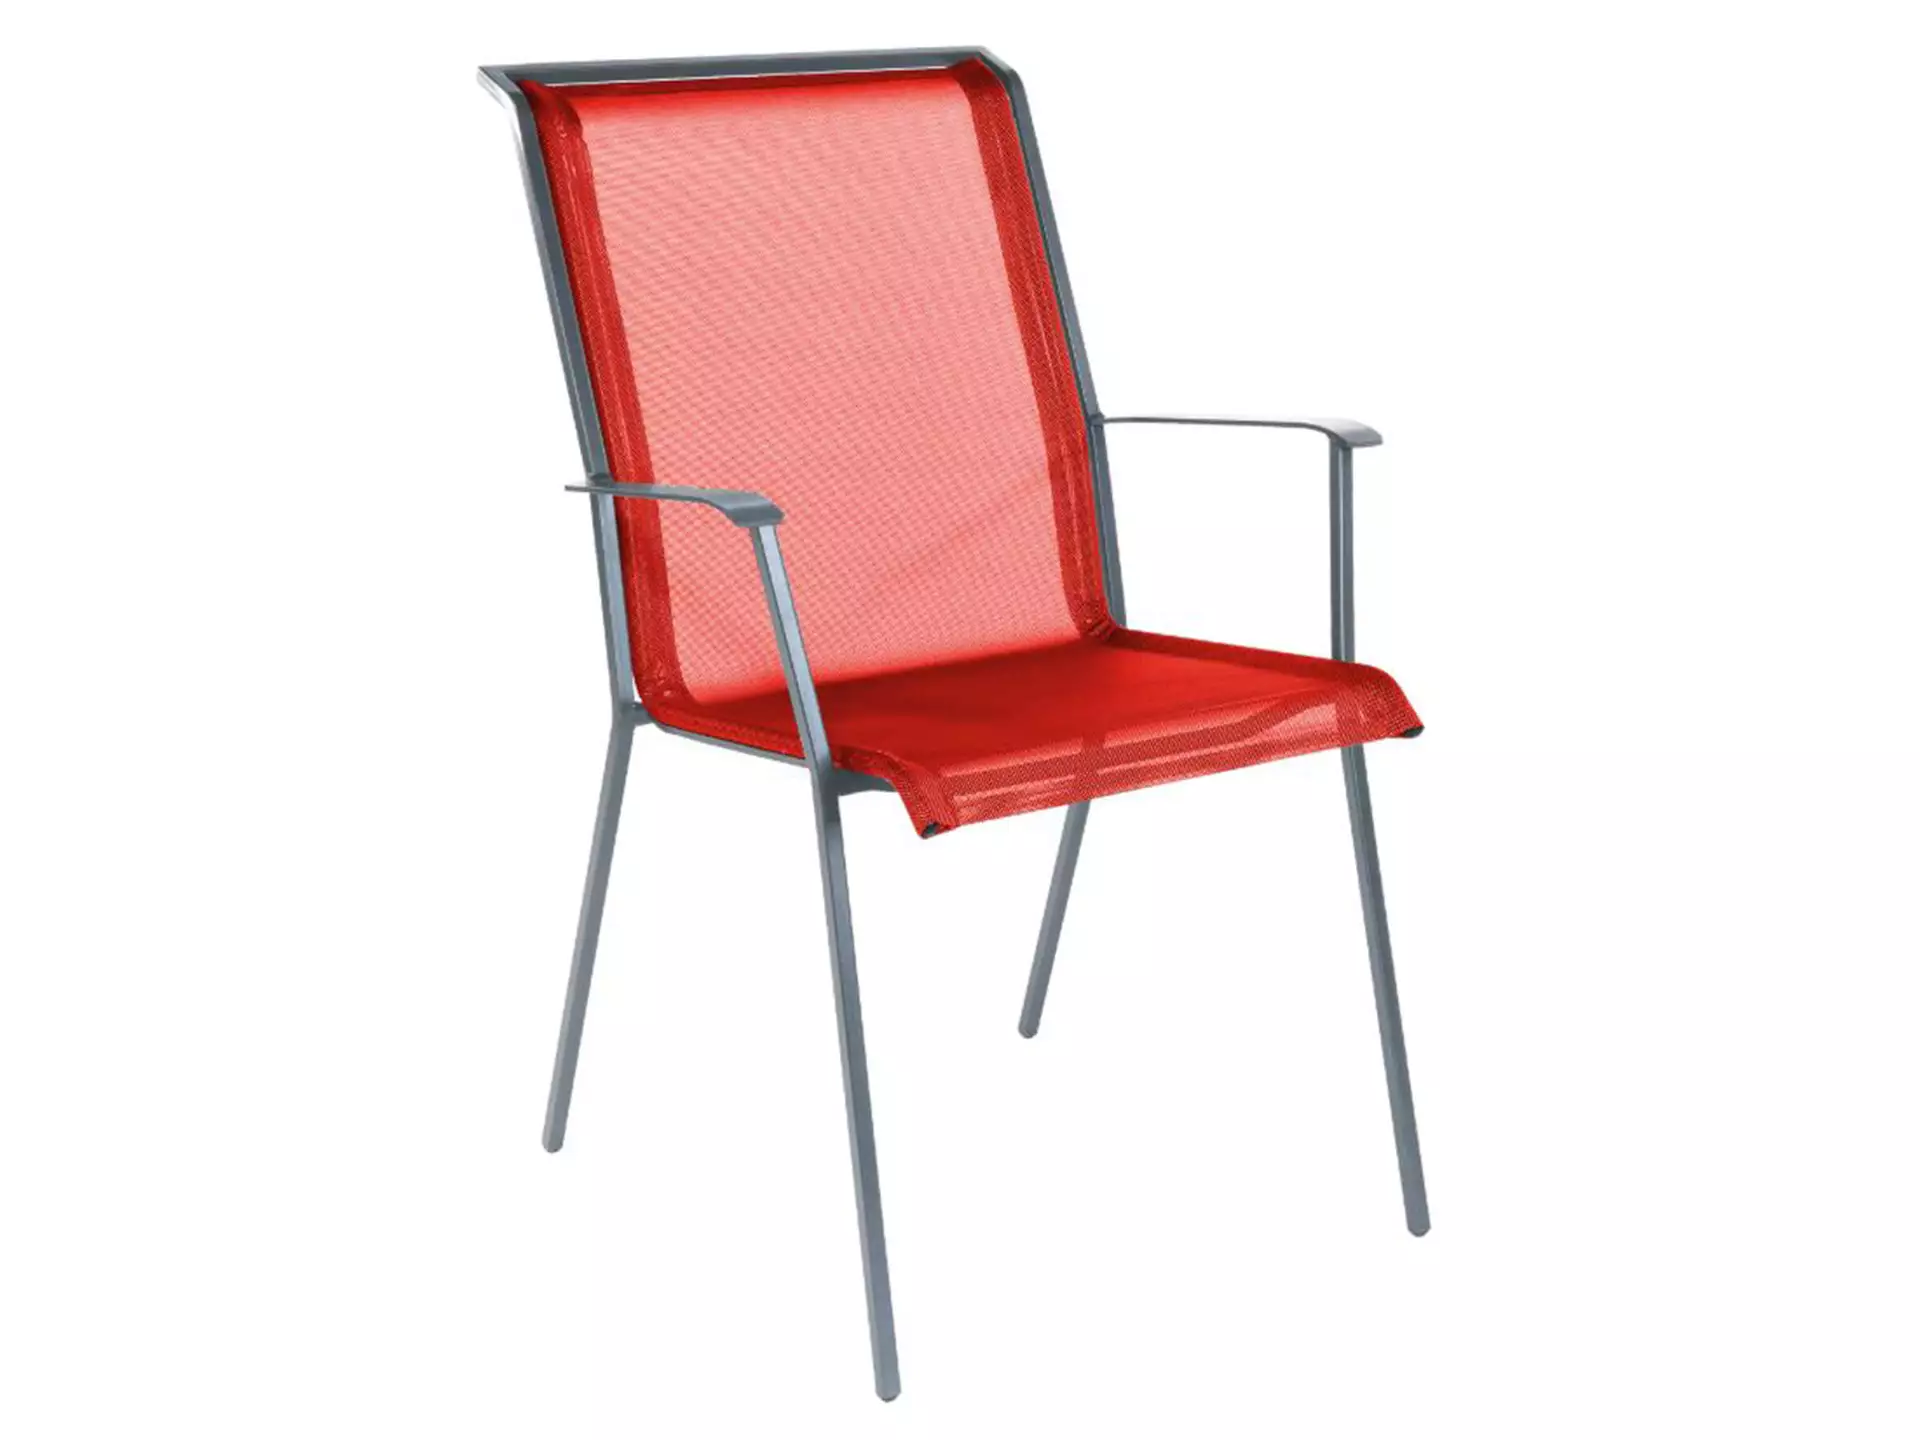 Matten-Sessel Chur Schaffner / Farbe: Rot